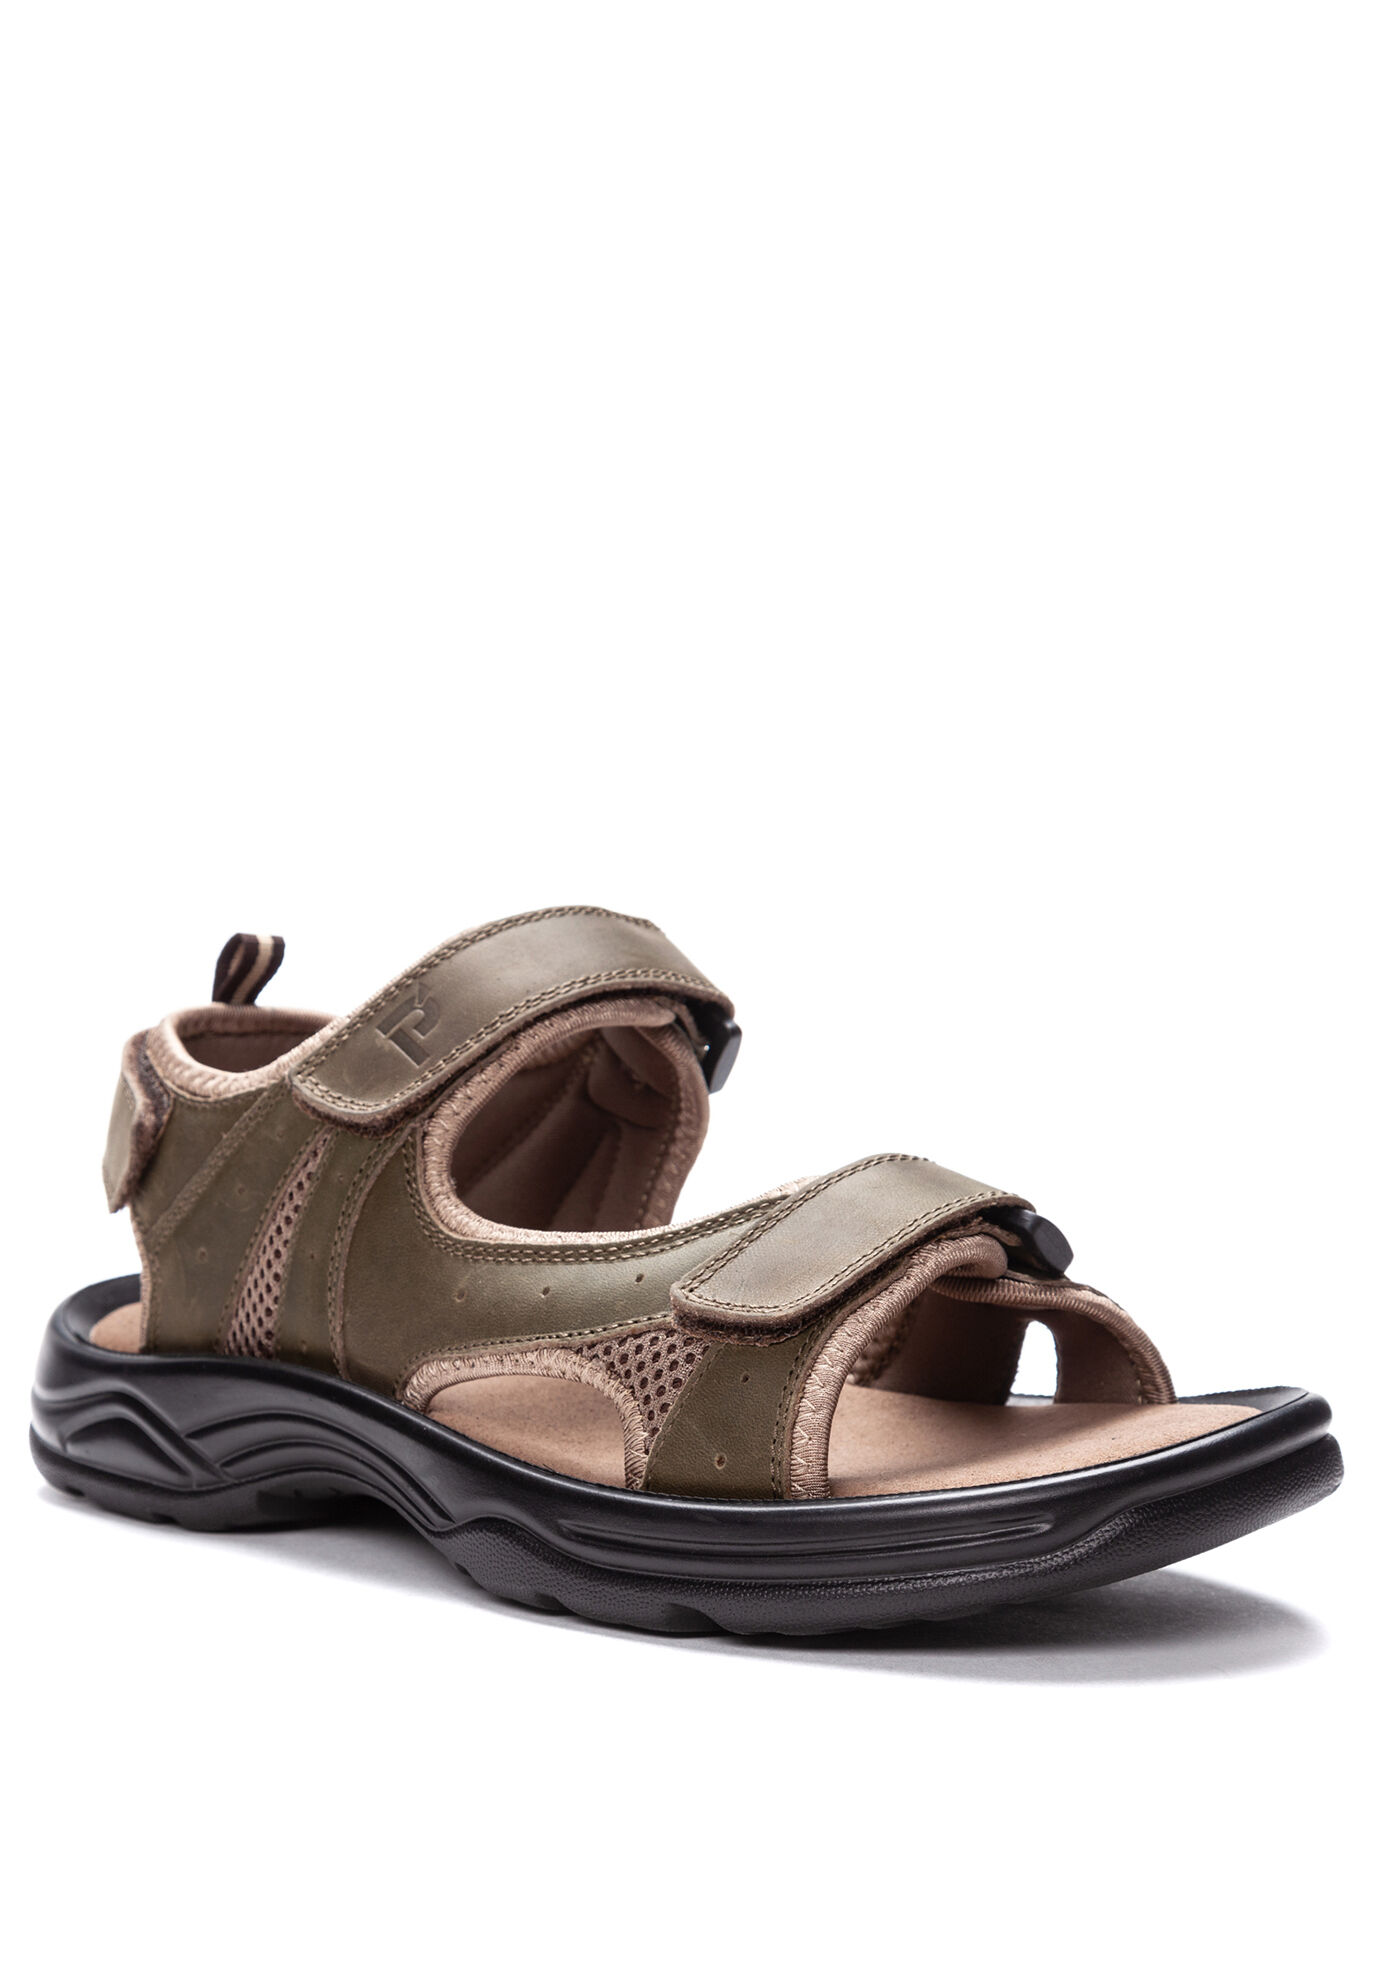 size 13 wide men's sandals